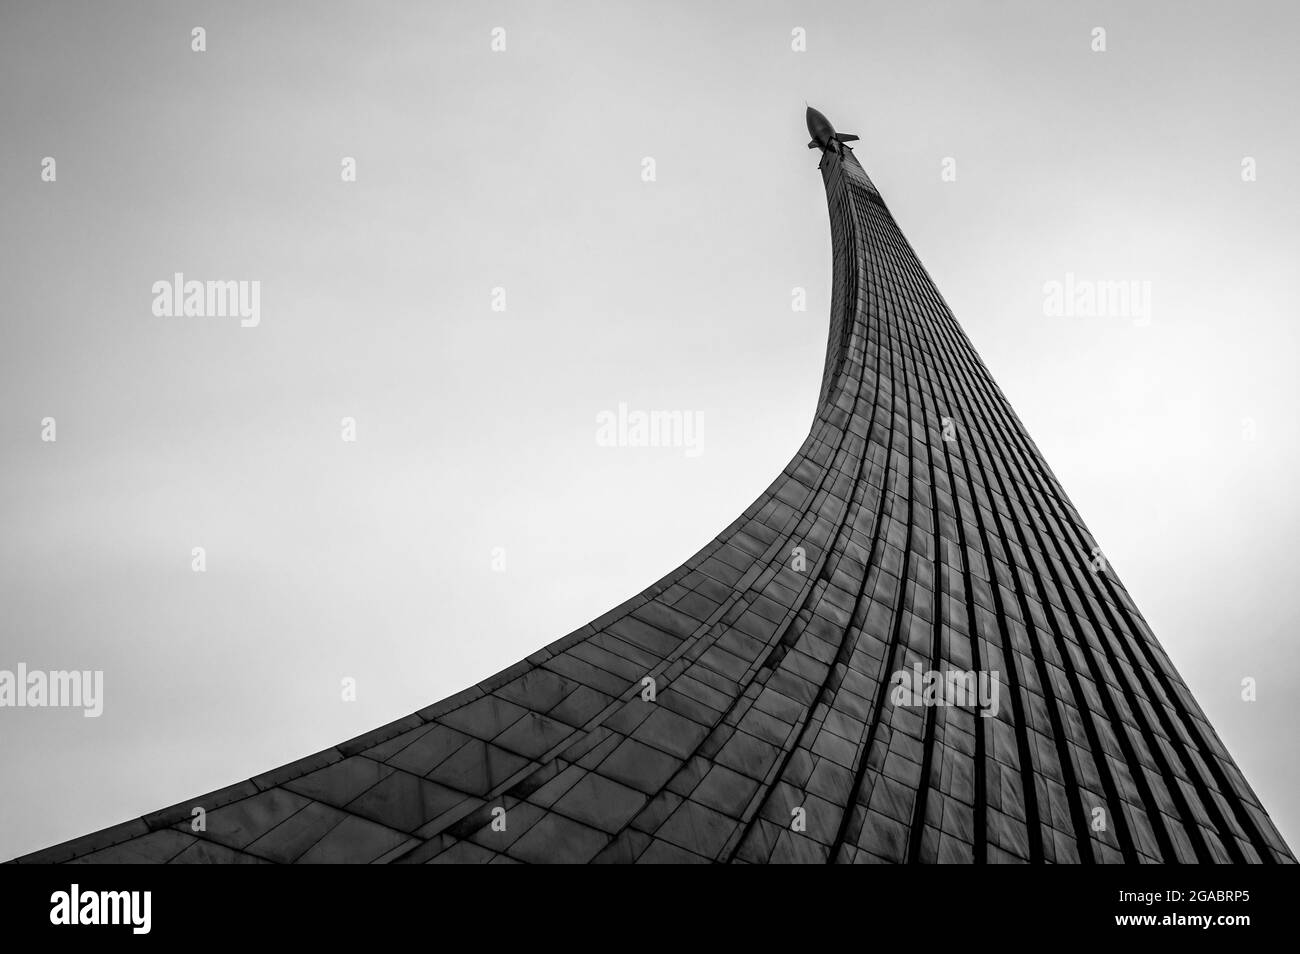 Monument aux conquérants de l'espace à l'allée des cosmonautes à Moscou, Russie. Noir et blanc. Banque D'Images